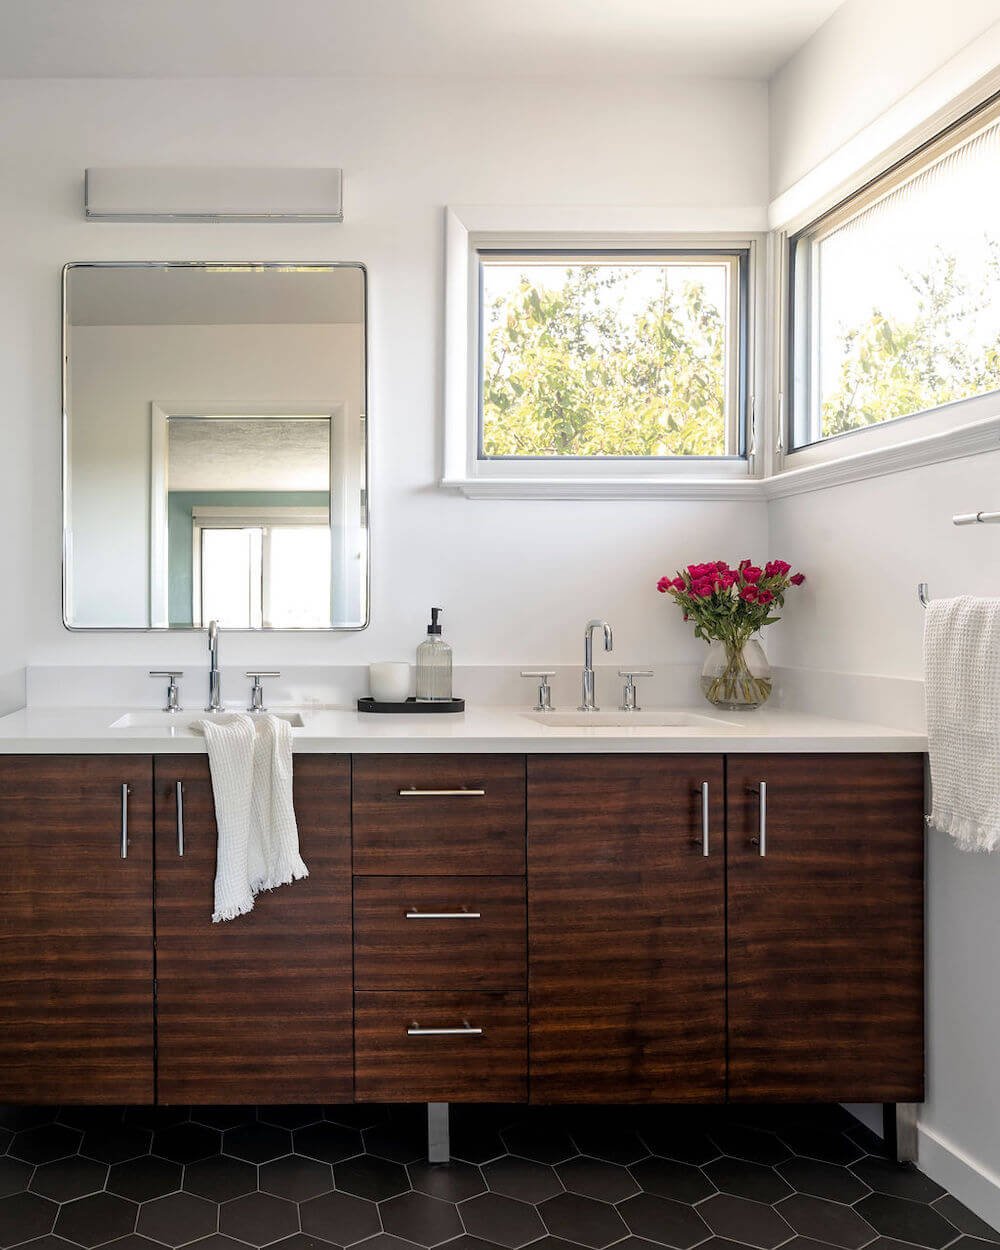 Sequoyah Oakland Bathroom Remodel - Bathroom Vanity.jpg